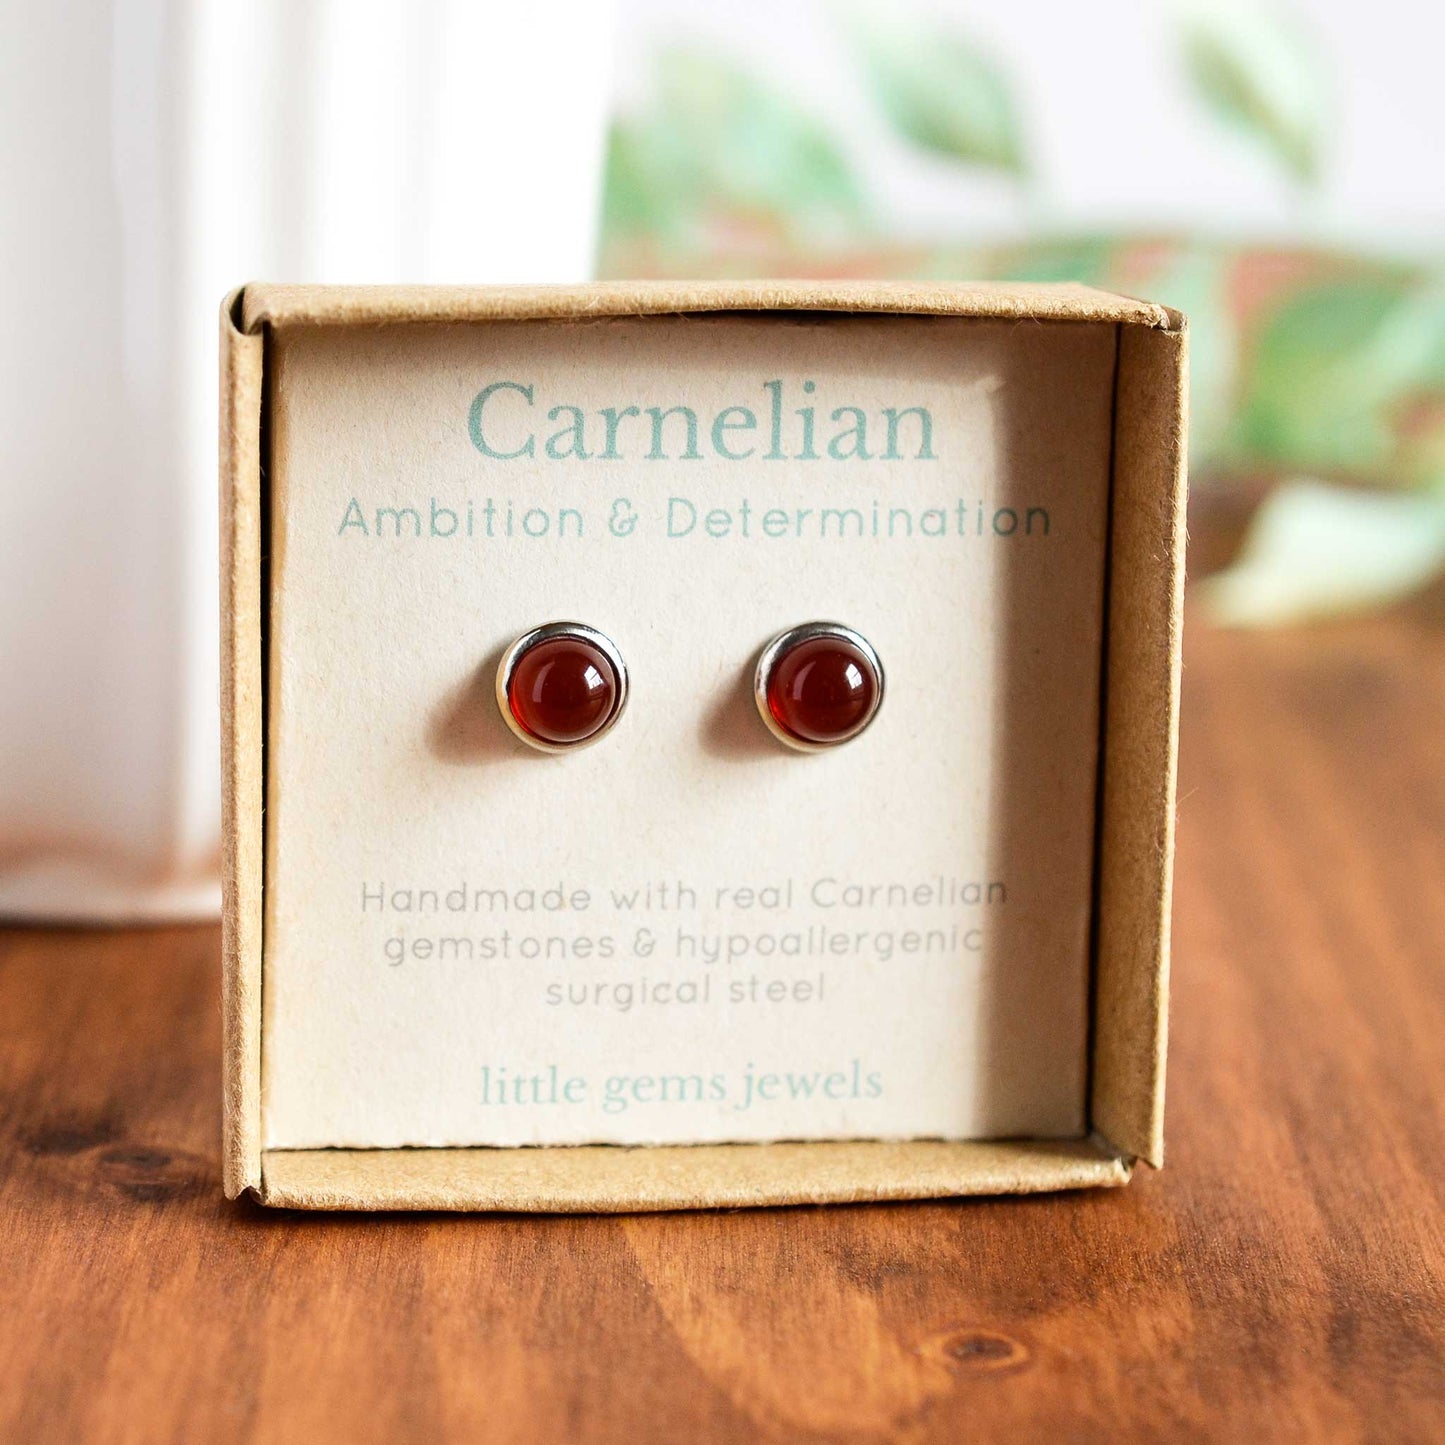 Carnelian gemstone stud earrings in gift box